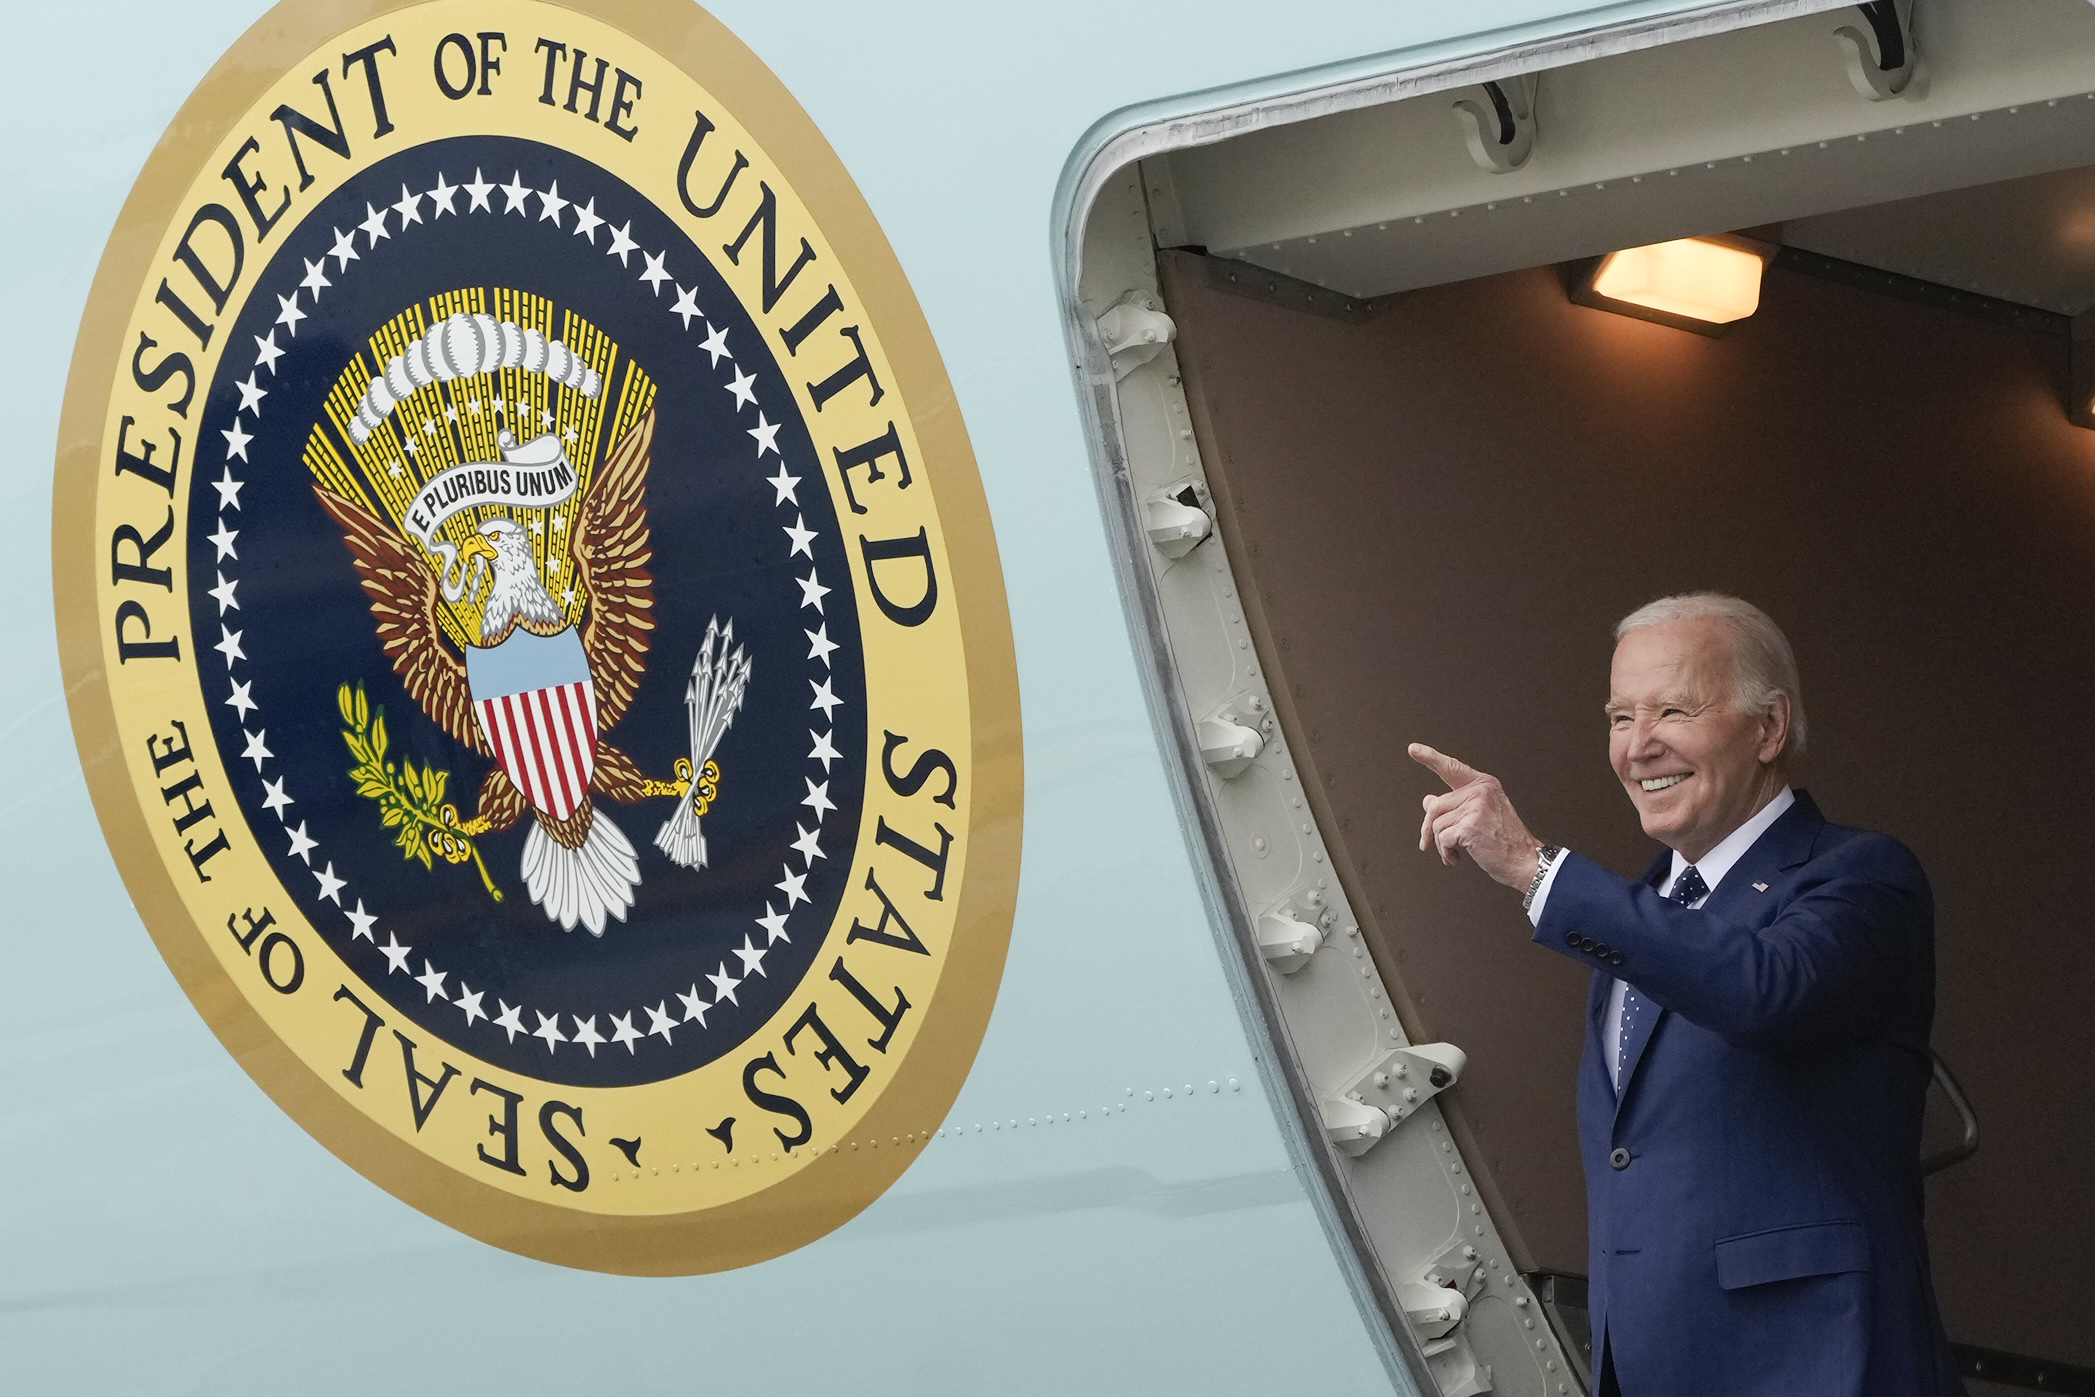 Biden calls Putin ‘a crazy SOB’ and ridicules Trump at San Francisco fundraiser